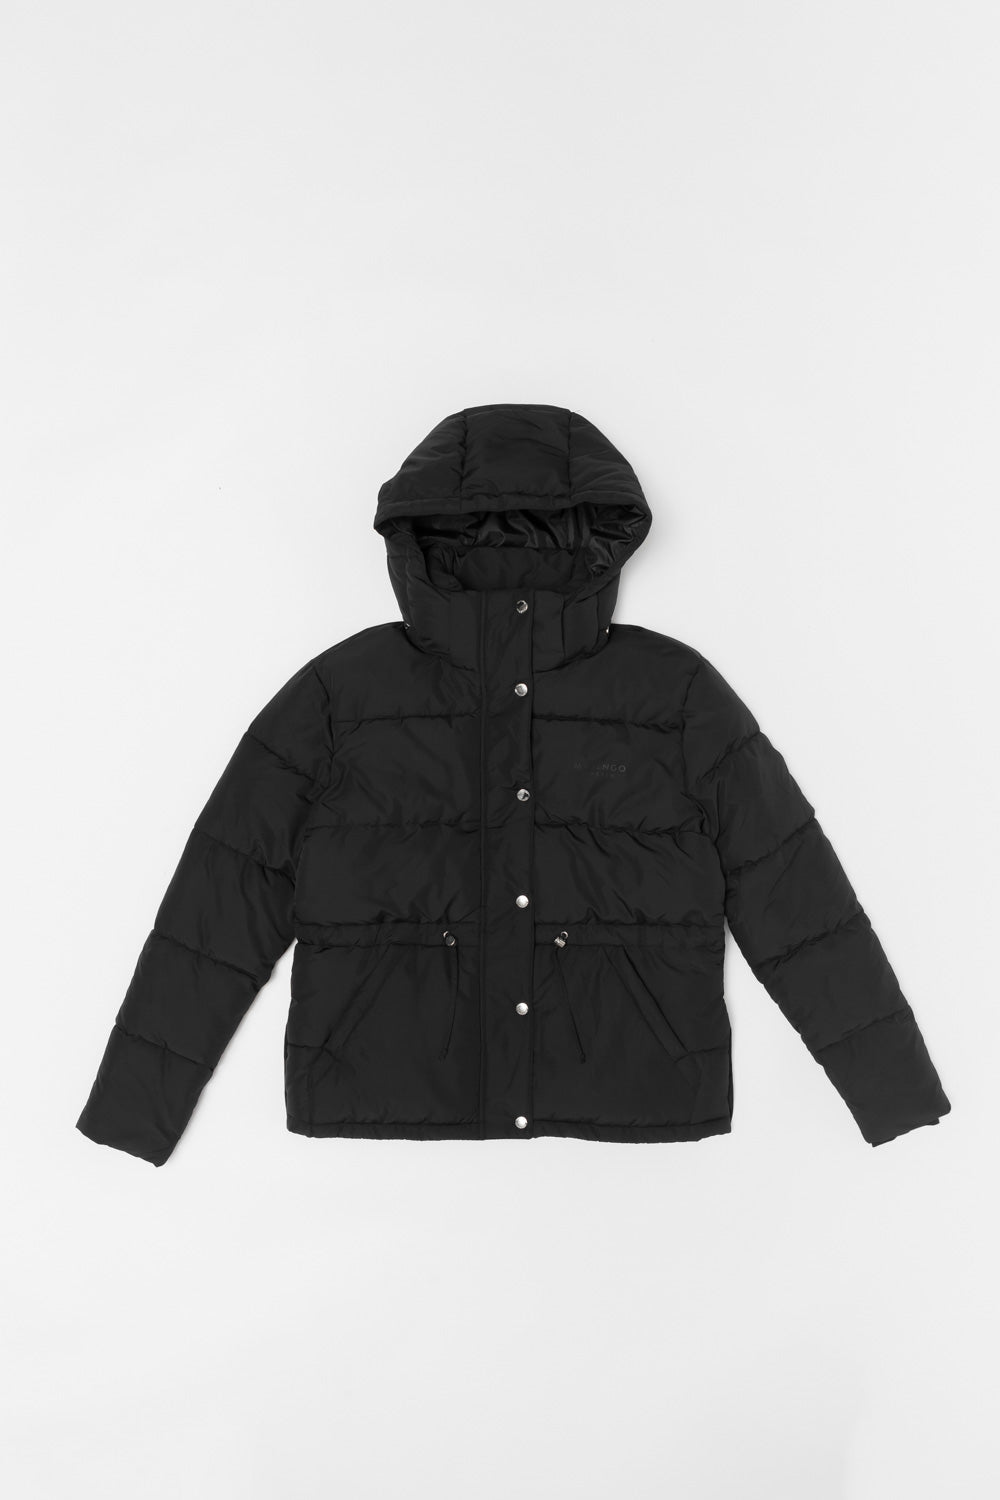 Black padded jacket with white background